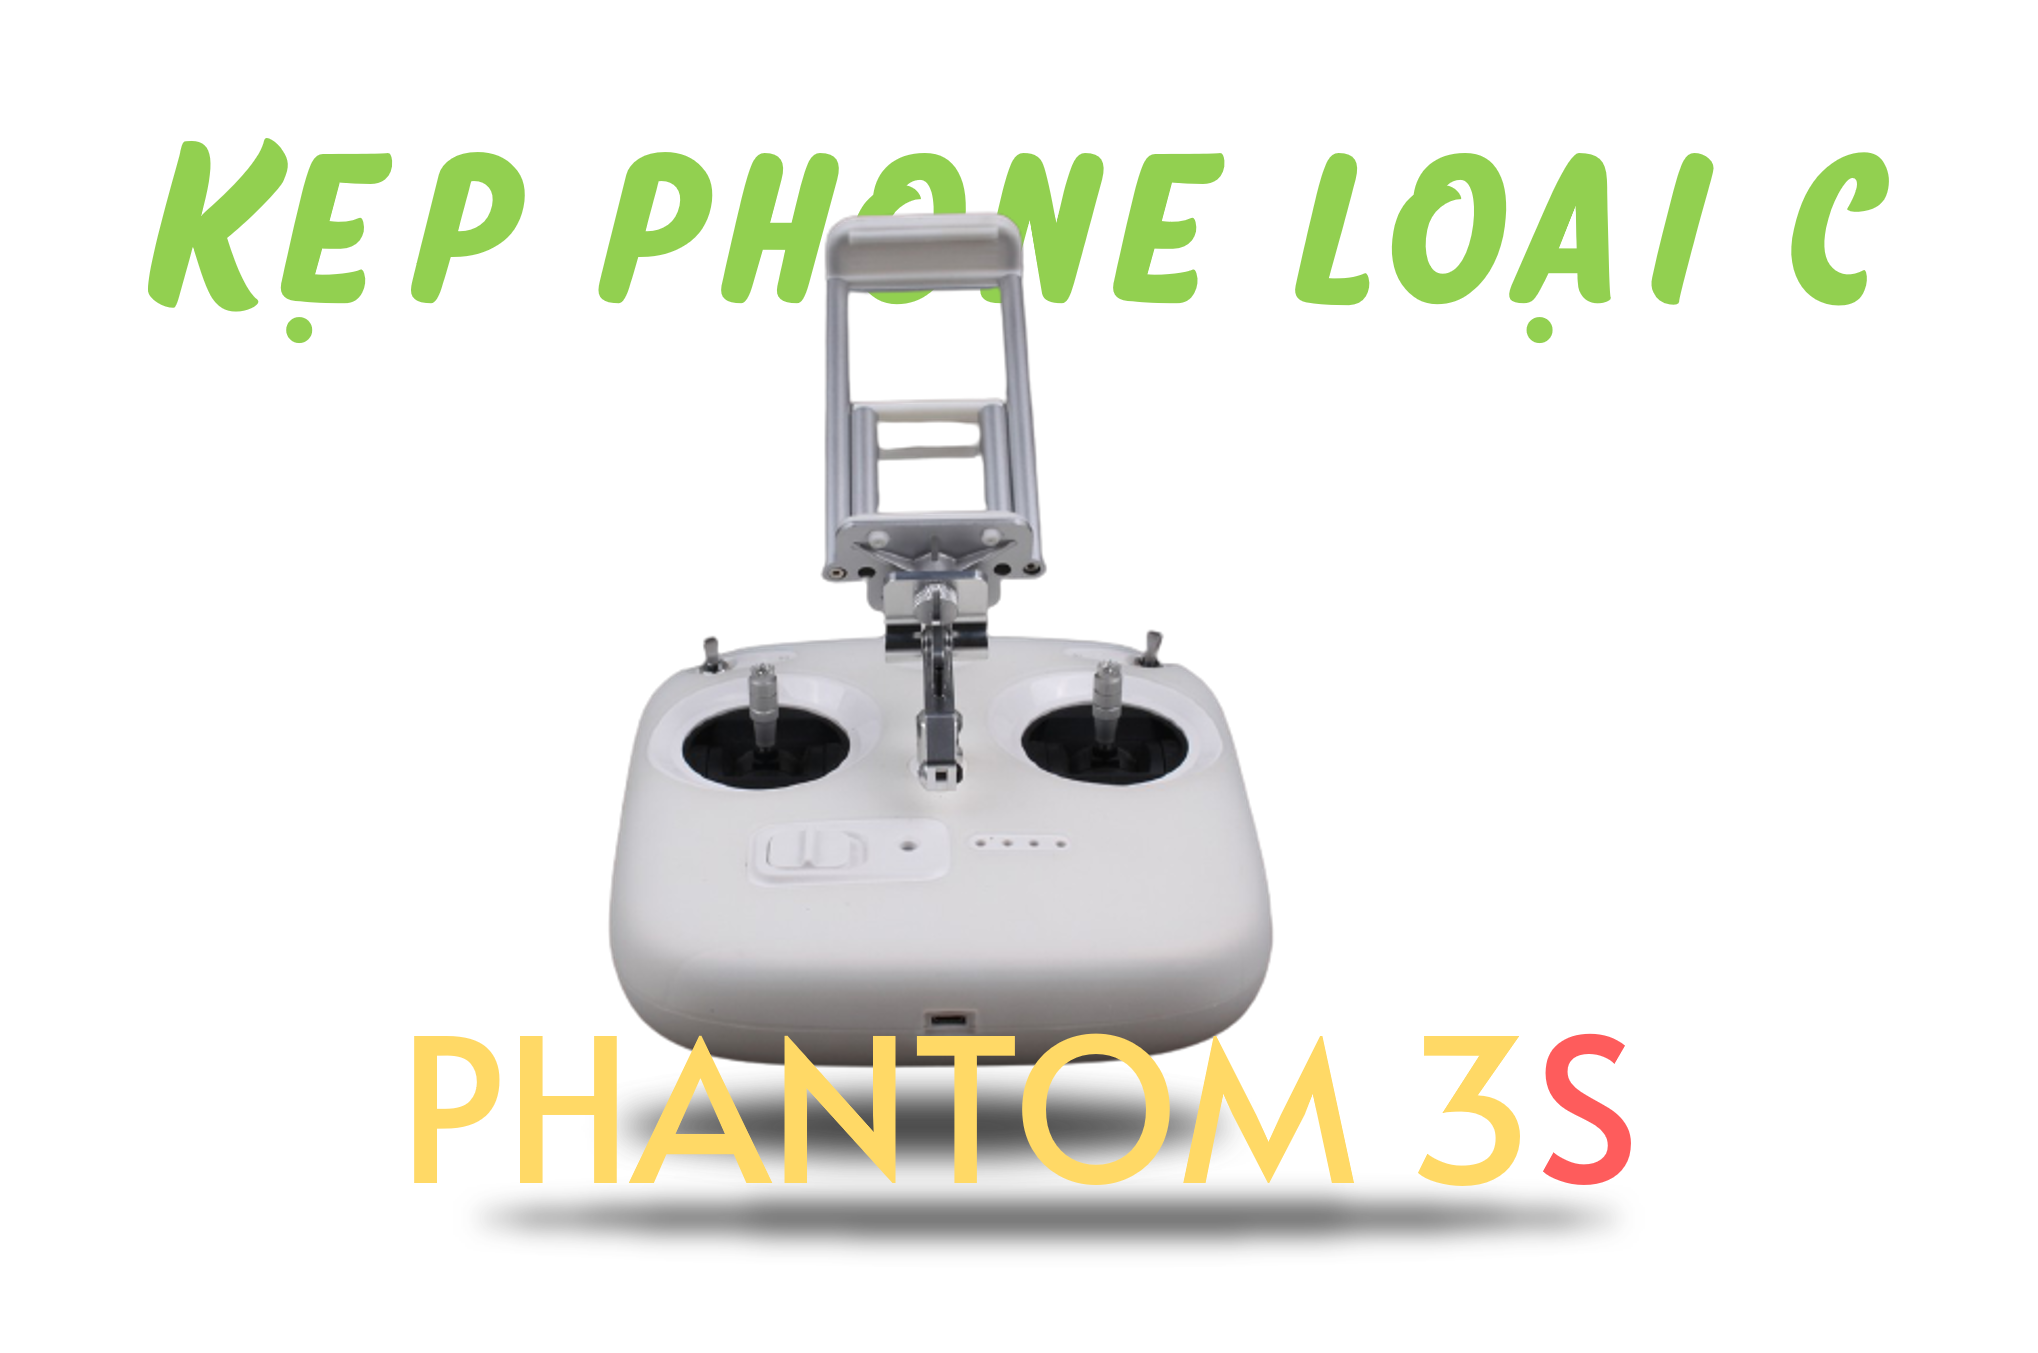 kep-phonetablet-phantom-3s-loai-c